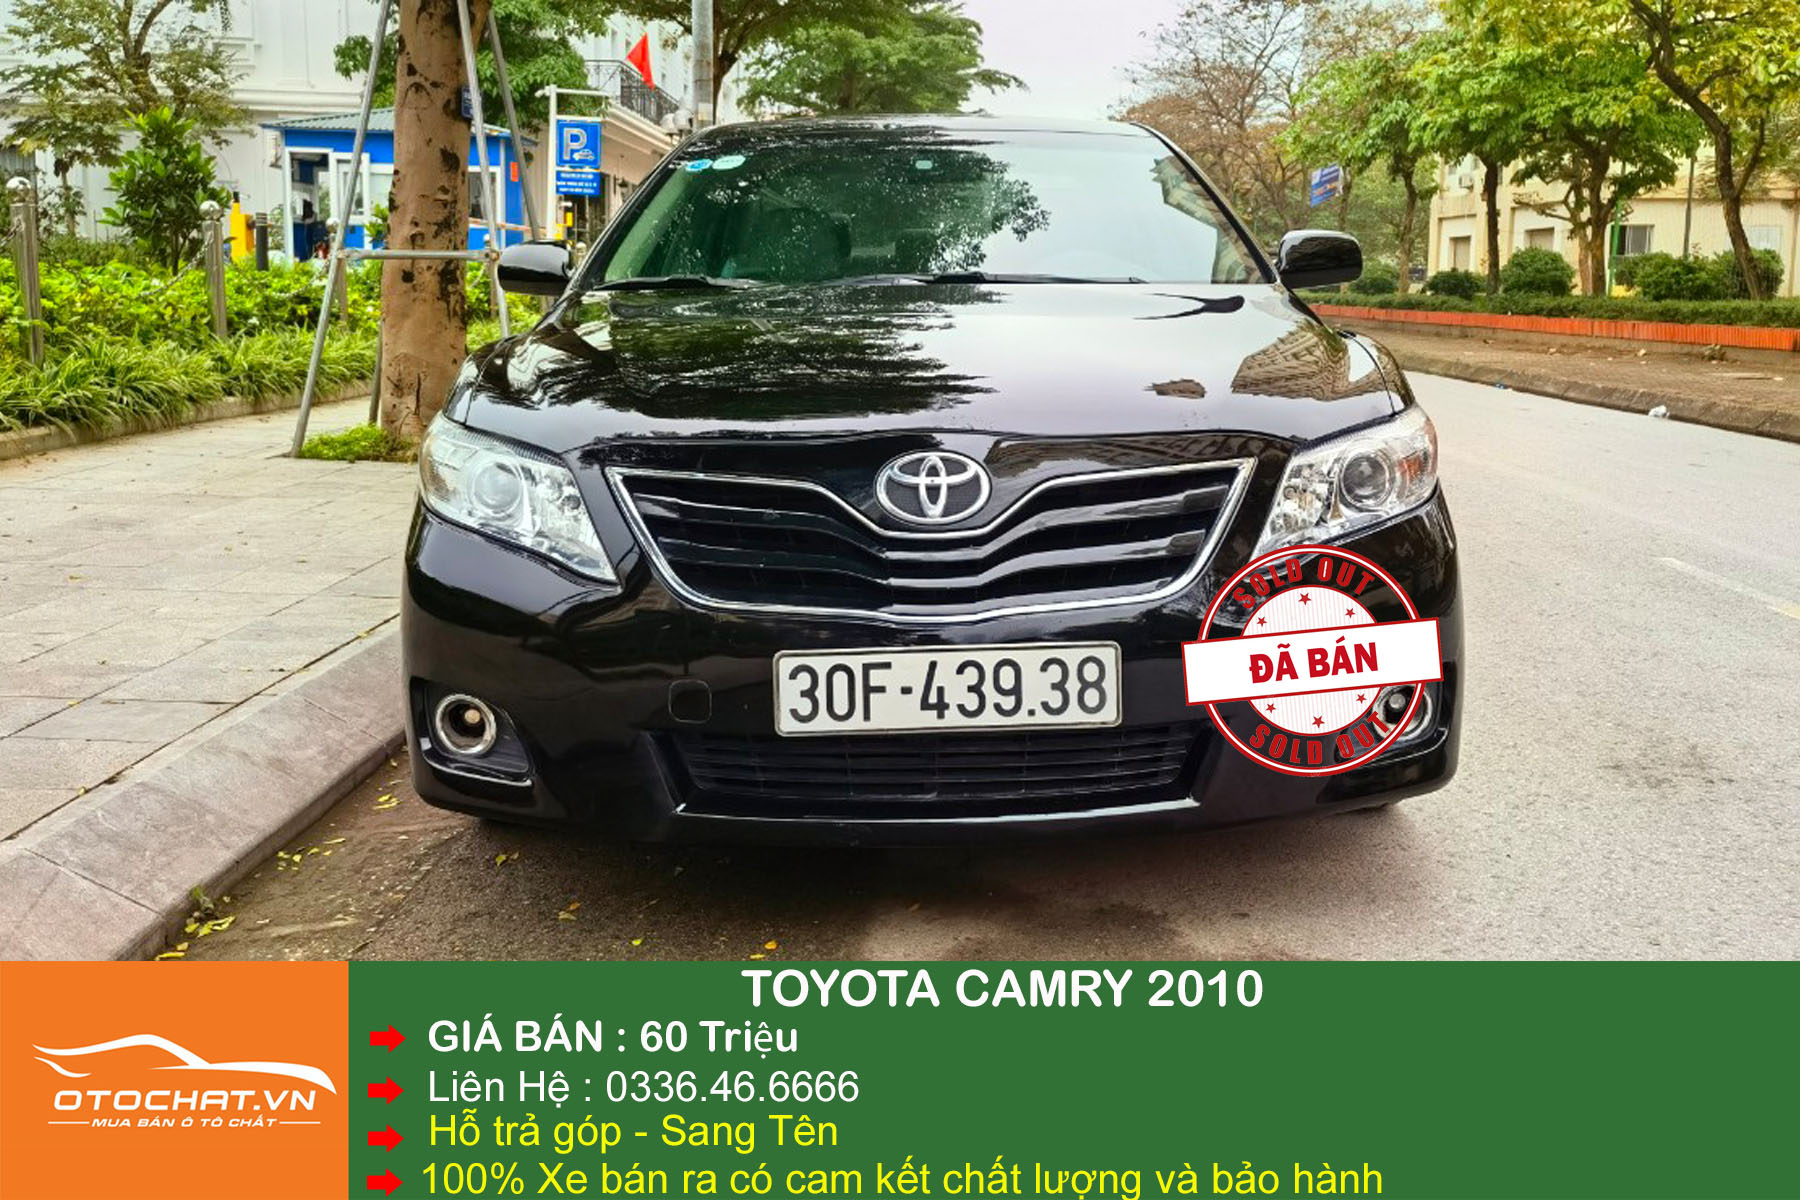 Toyota Camry LE 25L nhập mỹ màu nâu vàng TP    Giá 570 triệu   0913166629  Xe Hơi Việt  Chợ Mua Bán Xe Ô Tô Xe Máy Xe Tải Xe Khách  Online